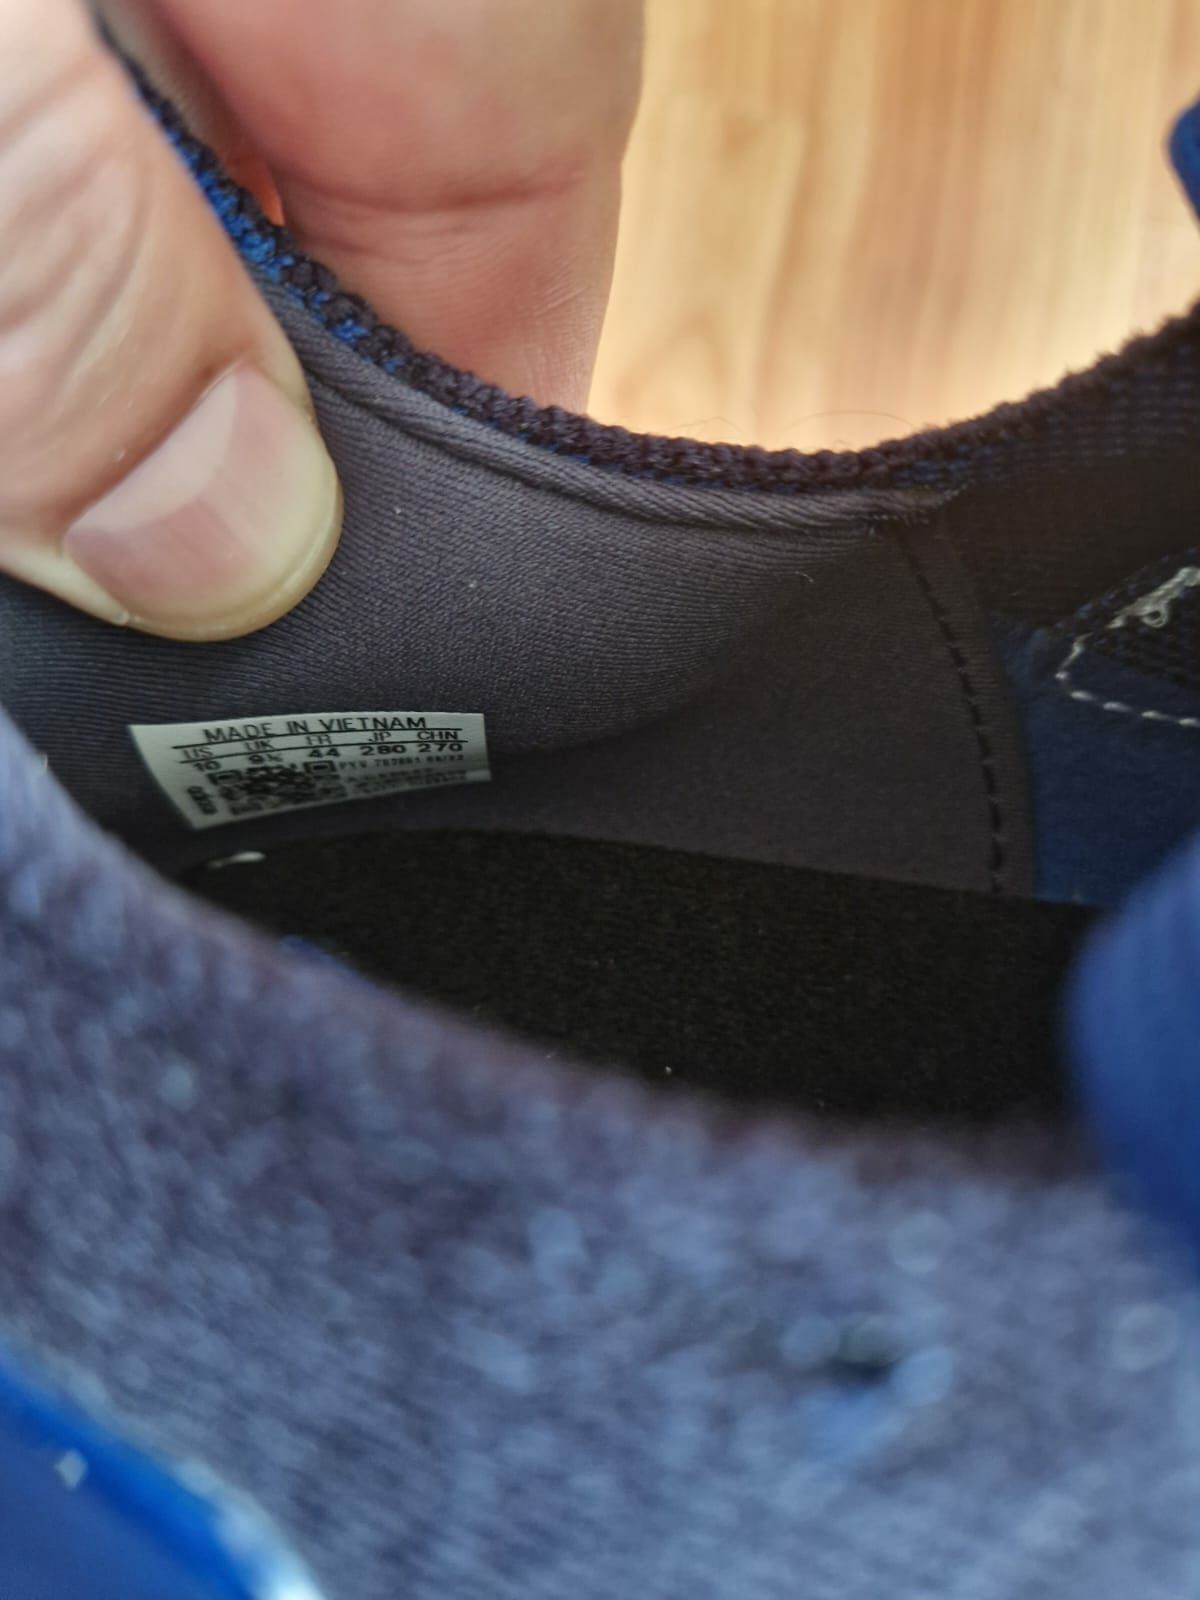 Încălțăminte Adidas ultra Boost